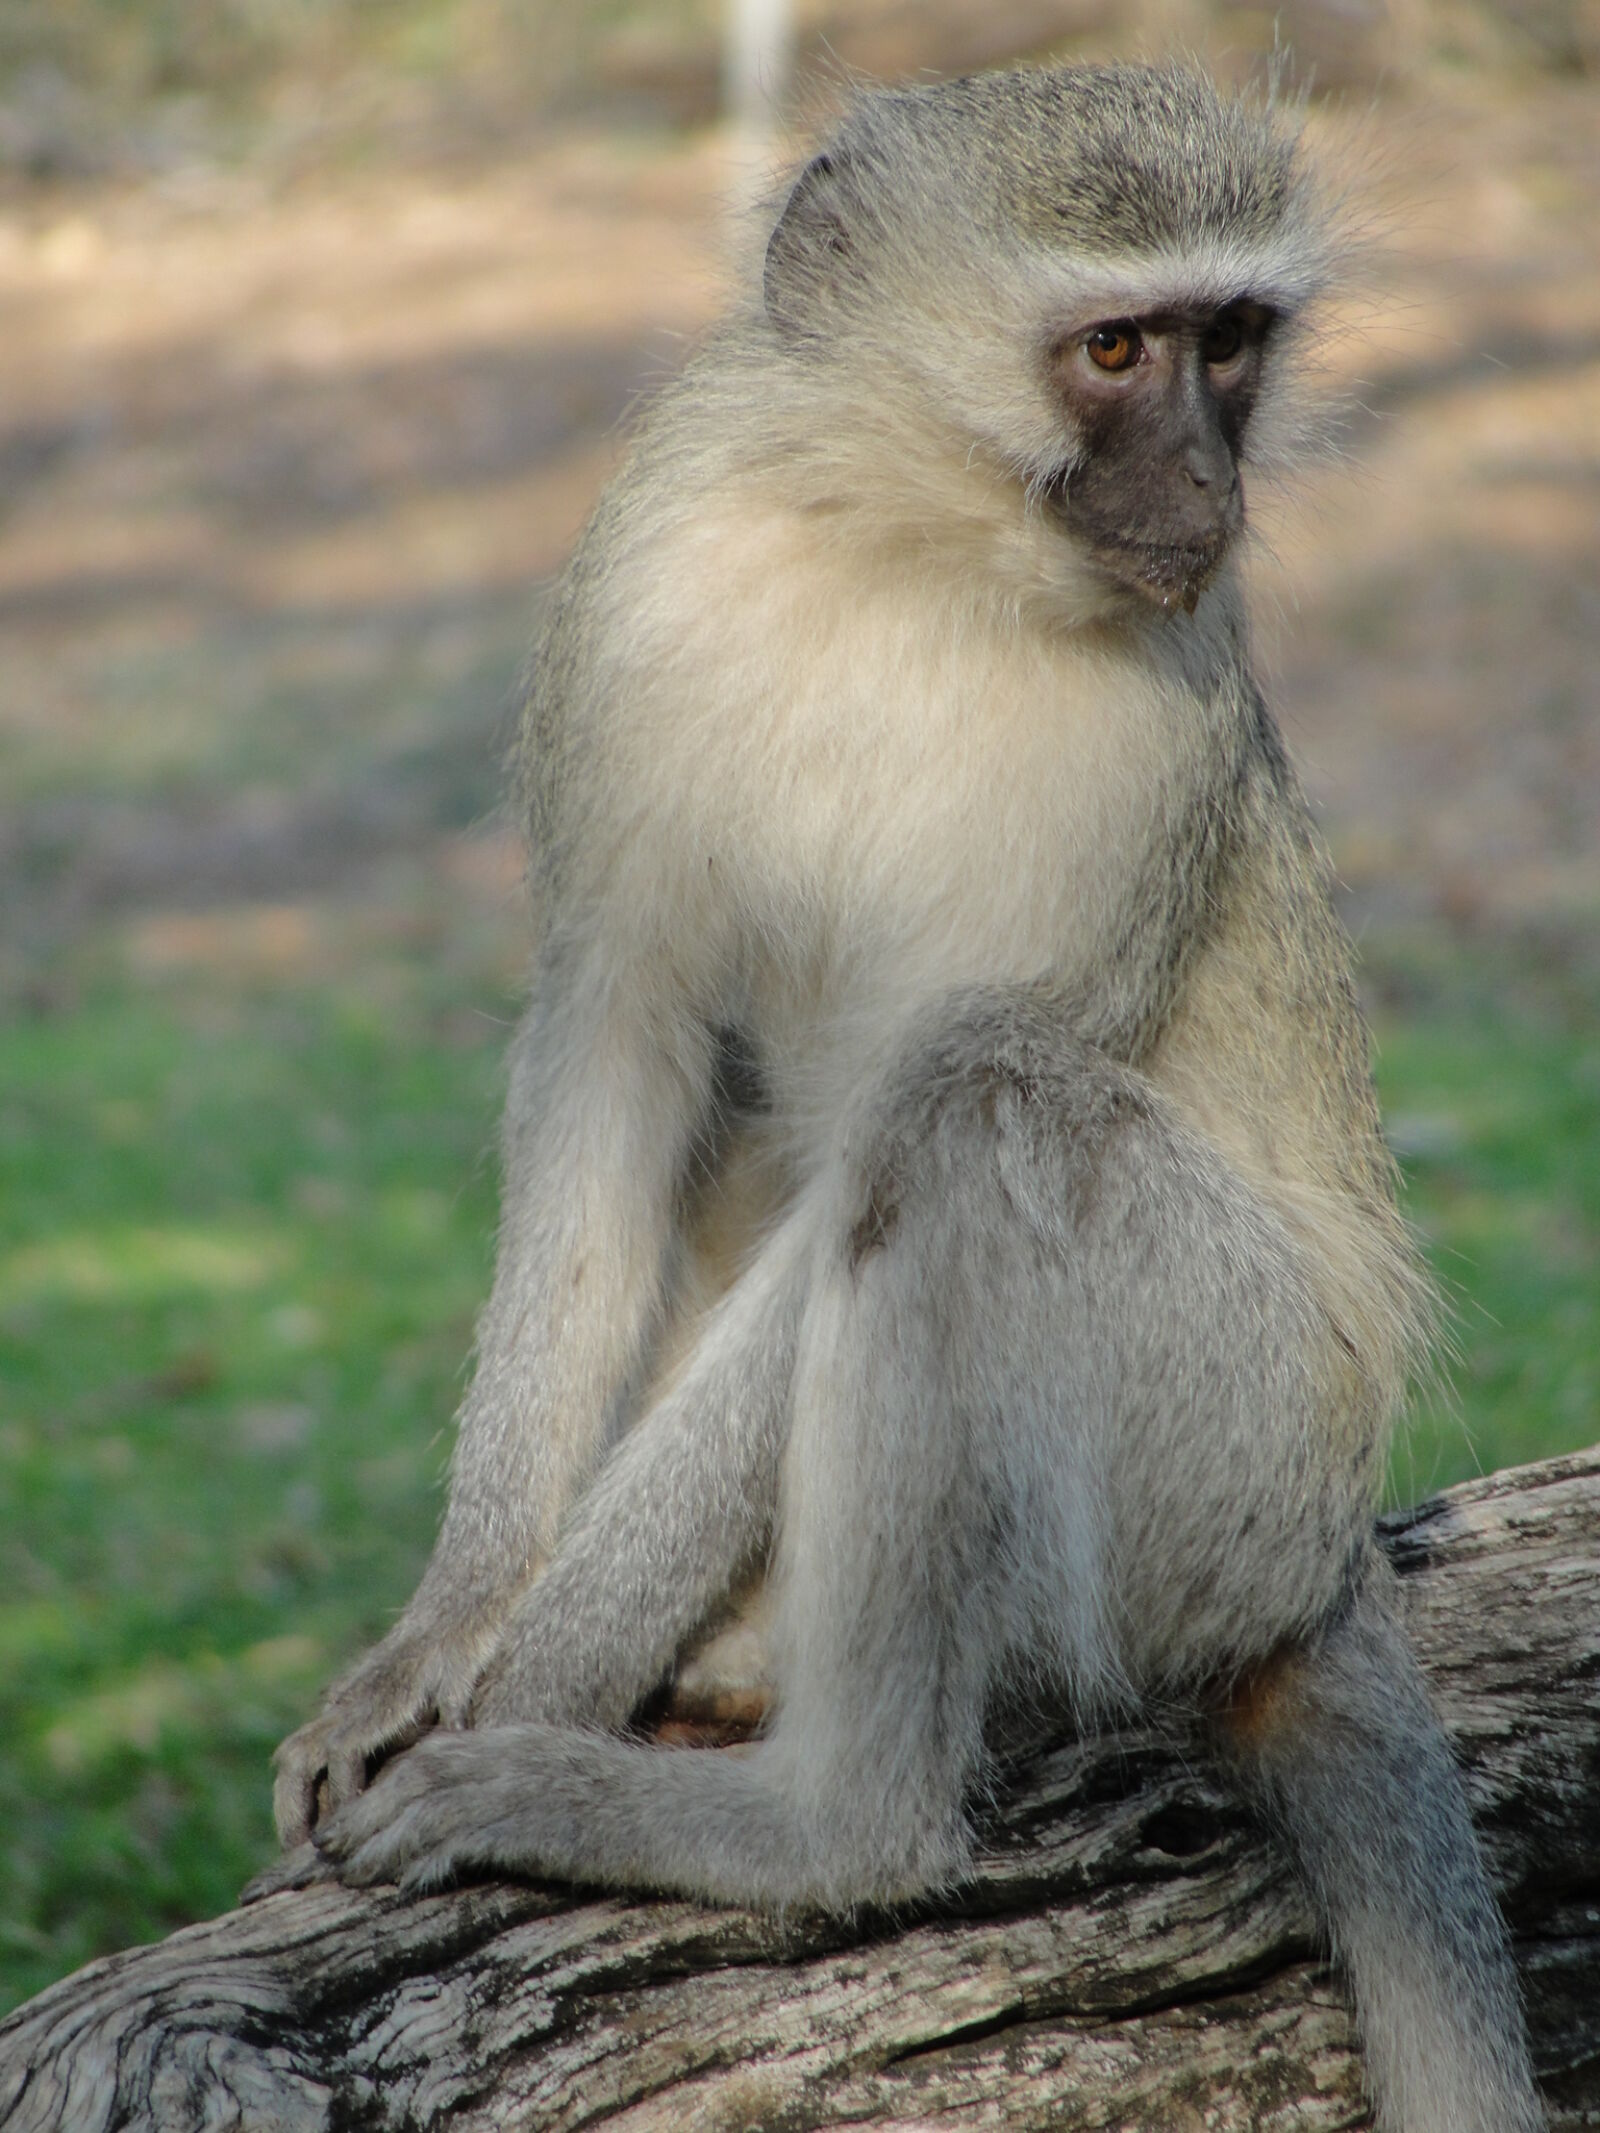 Sony Cyber-shot DSC-H20 sample photo. Monkey, monkey, sitting, vervet photography